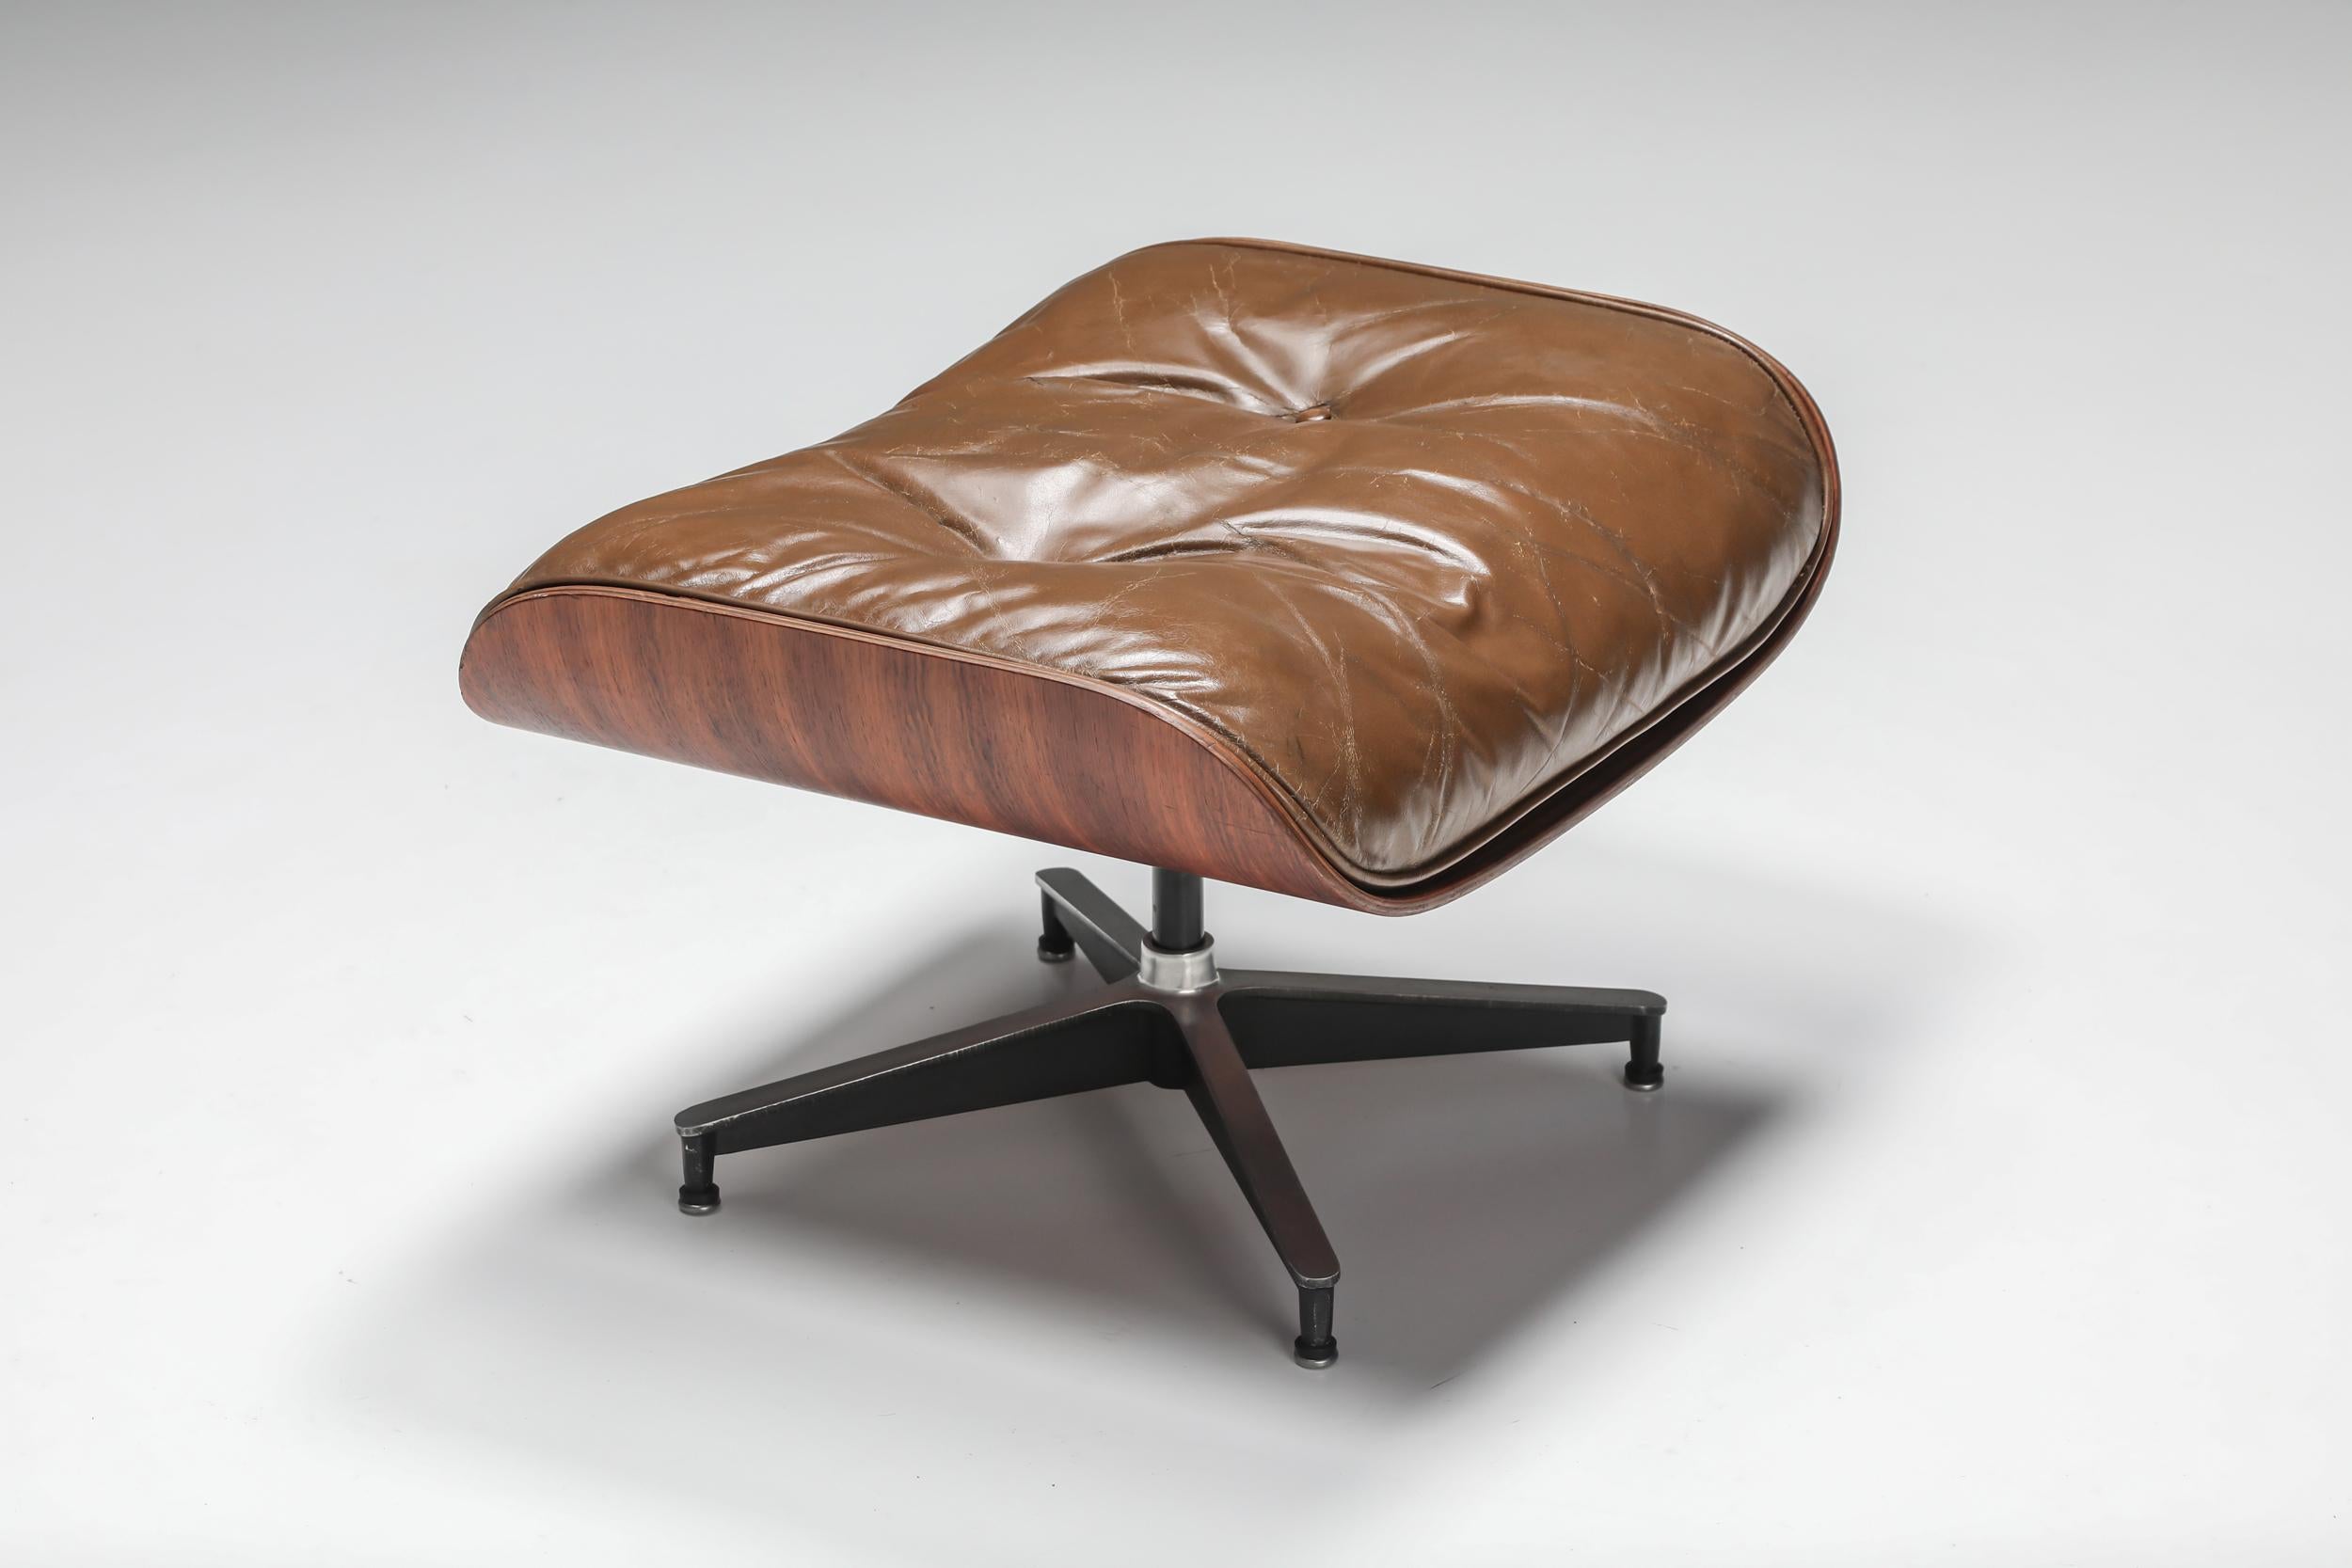 brown eames chair